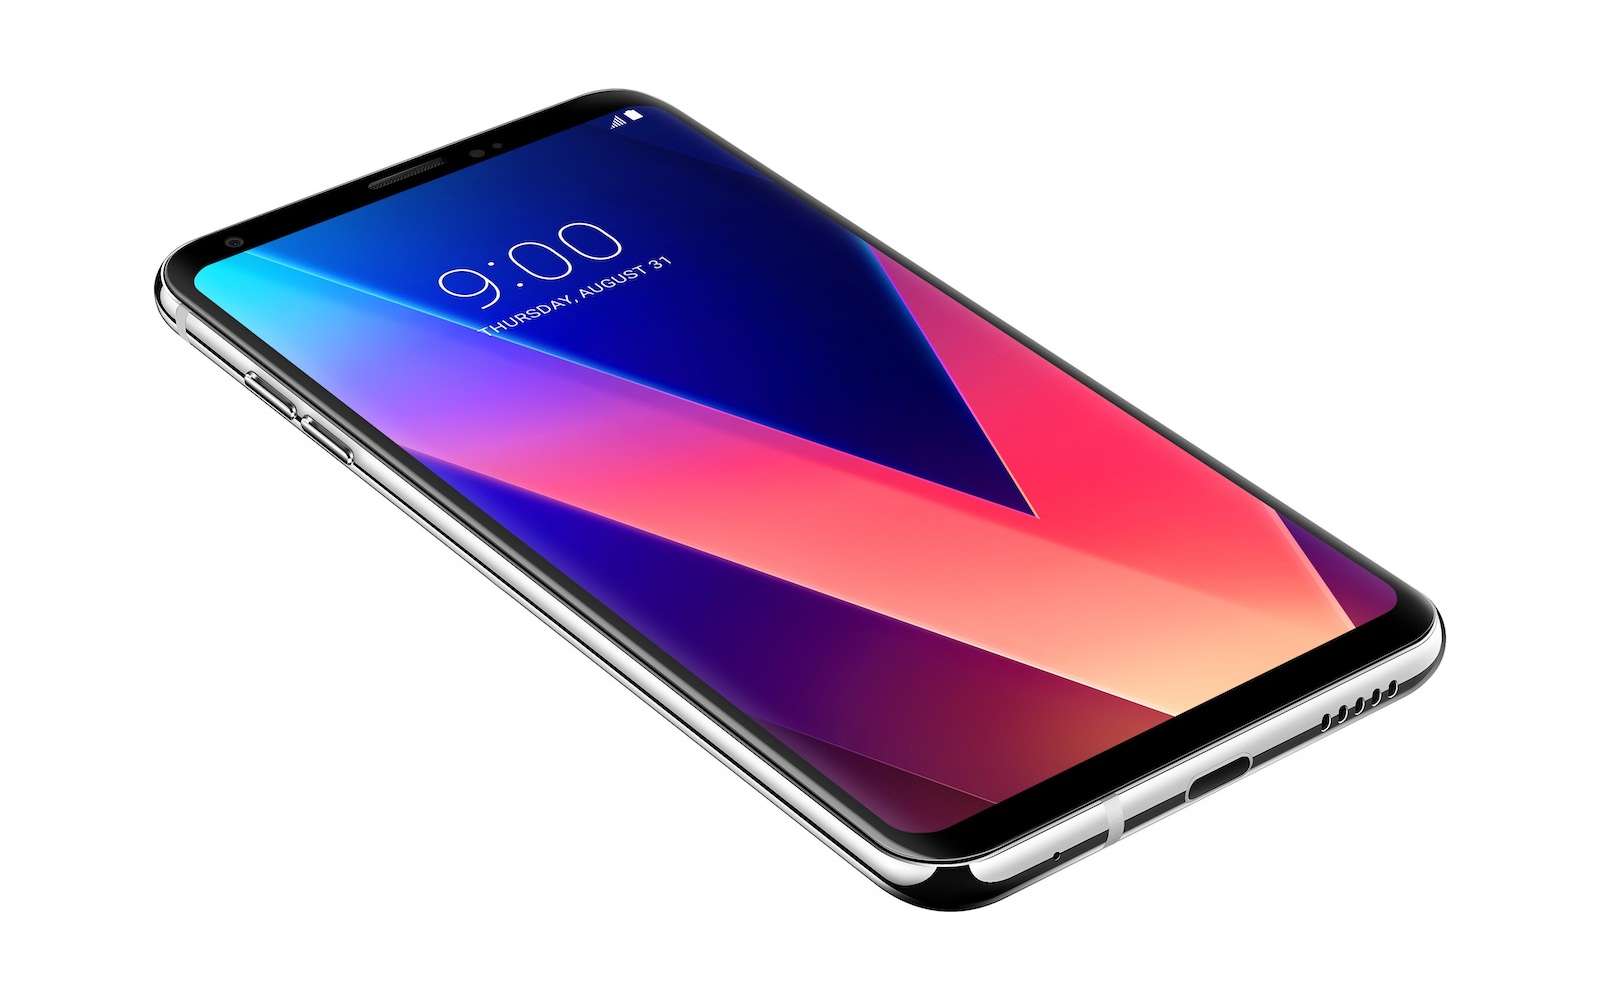 LG veut aujouter un deuxième écran sur son smartphone